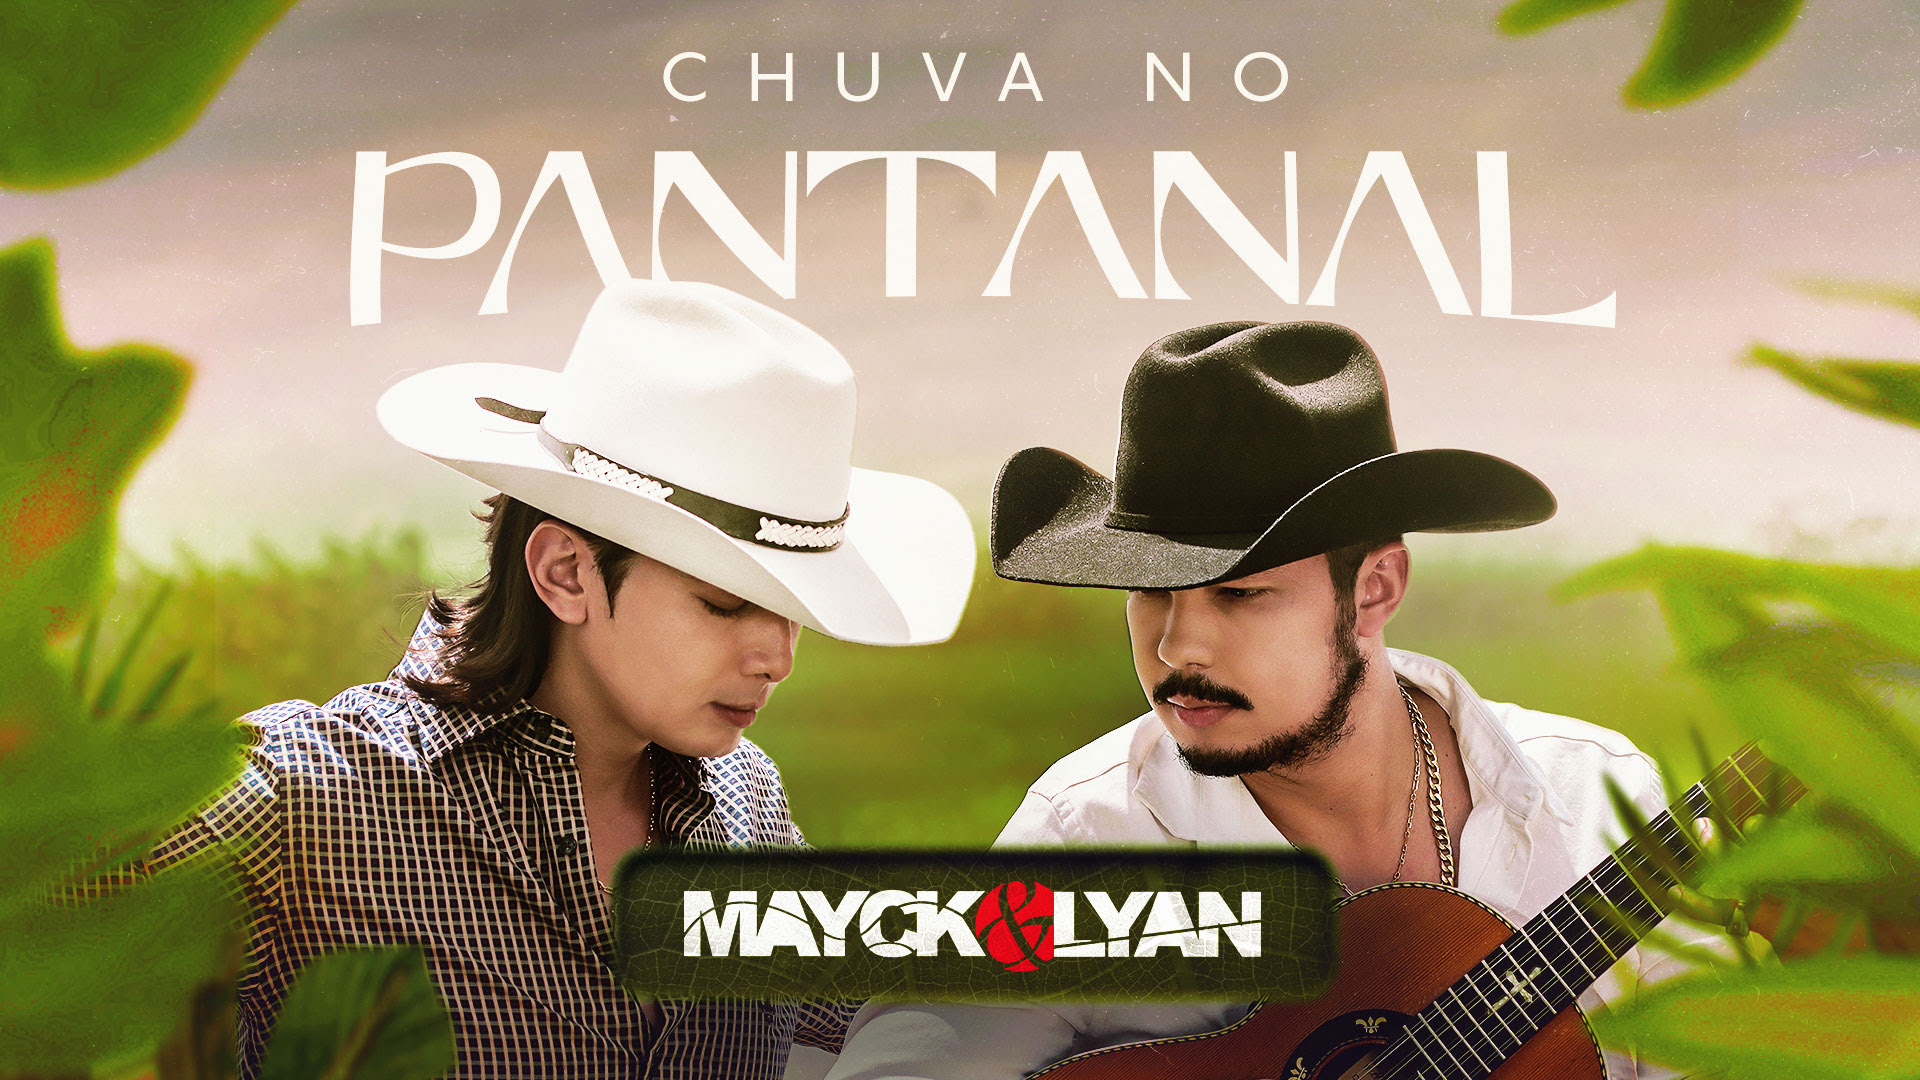 “Chuva no Pantanal” de Mayck e Lyan ganha destaque e passa a fazer parte da trilha sonora da novela “Pantanal”, na Globo